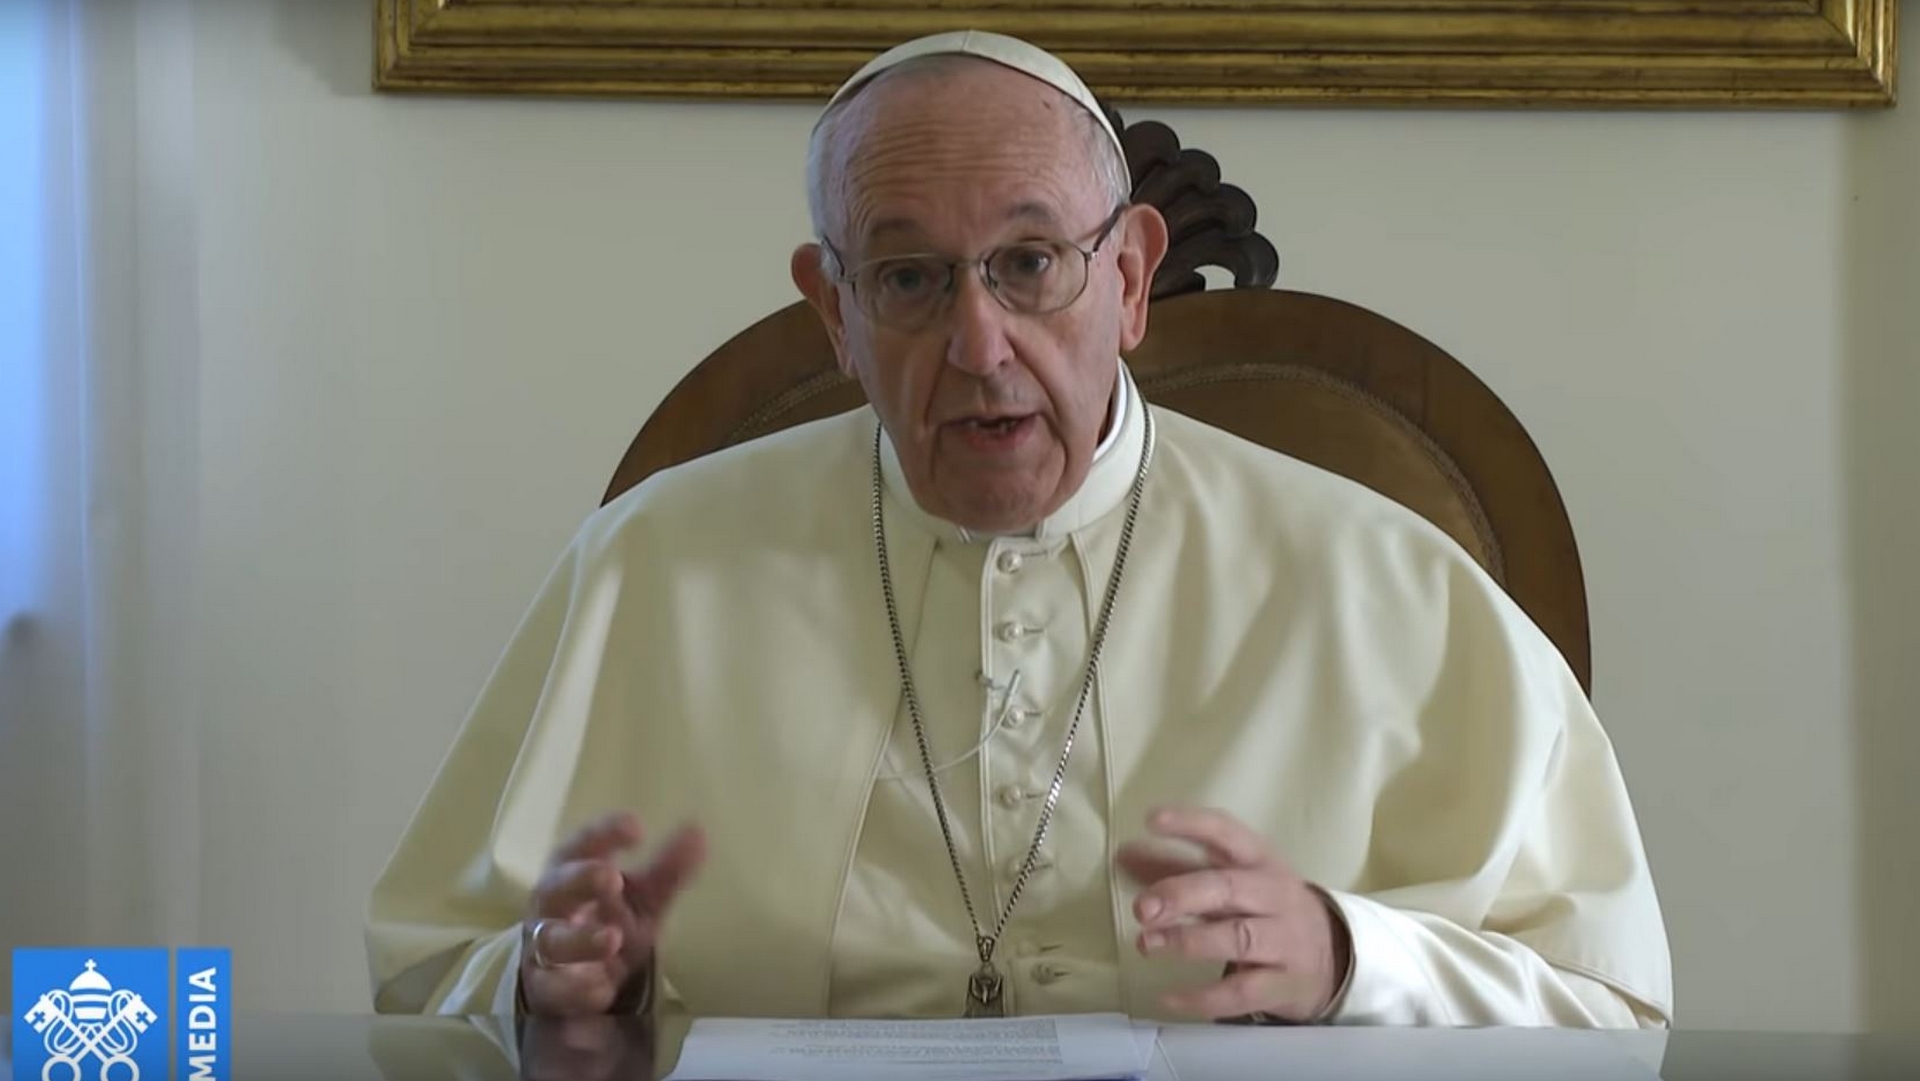 Le pape François a adressé un message vidéo aux évêques et prêtres du Venezuela | capture d'écran / Vatican Media